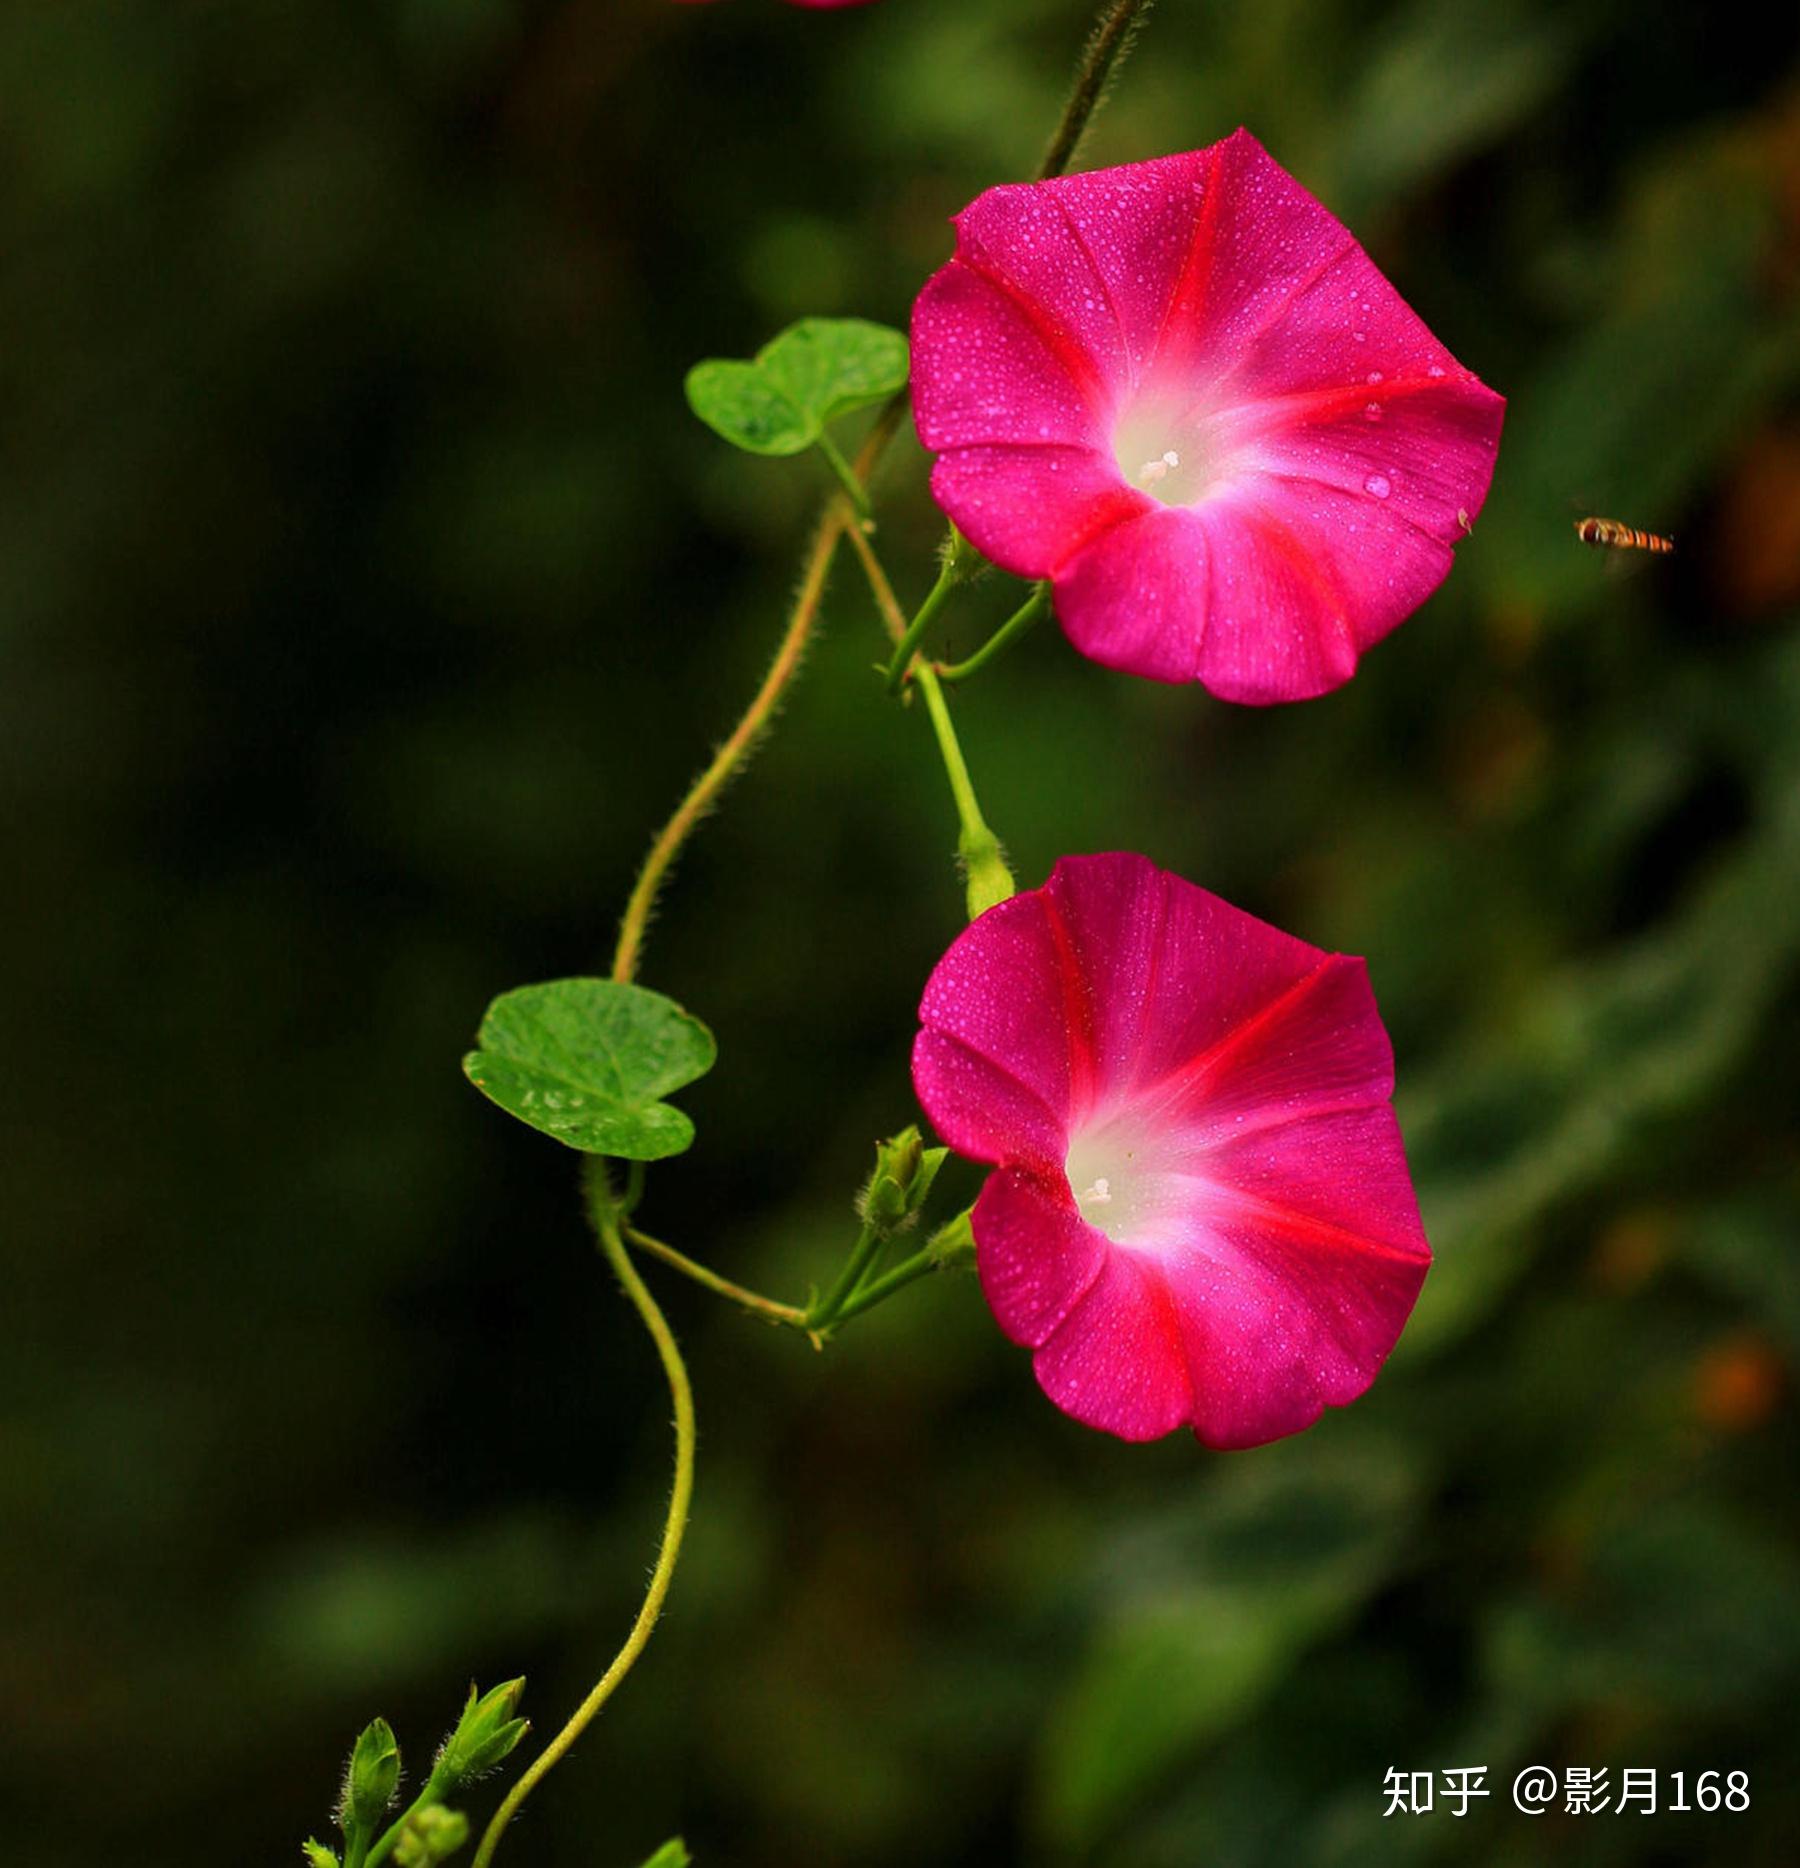 这一种植物的花酷似喇叭状,因此有些地方叫它做喇叭花